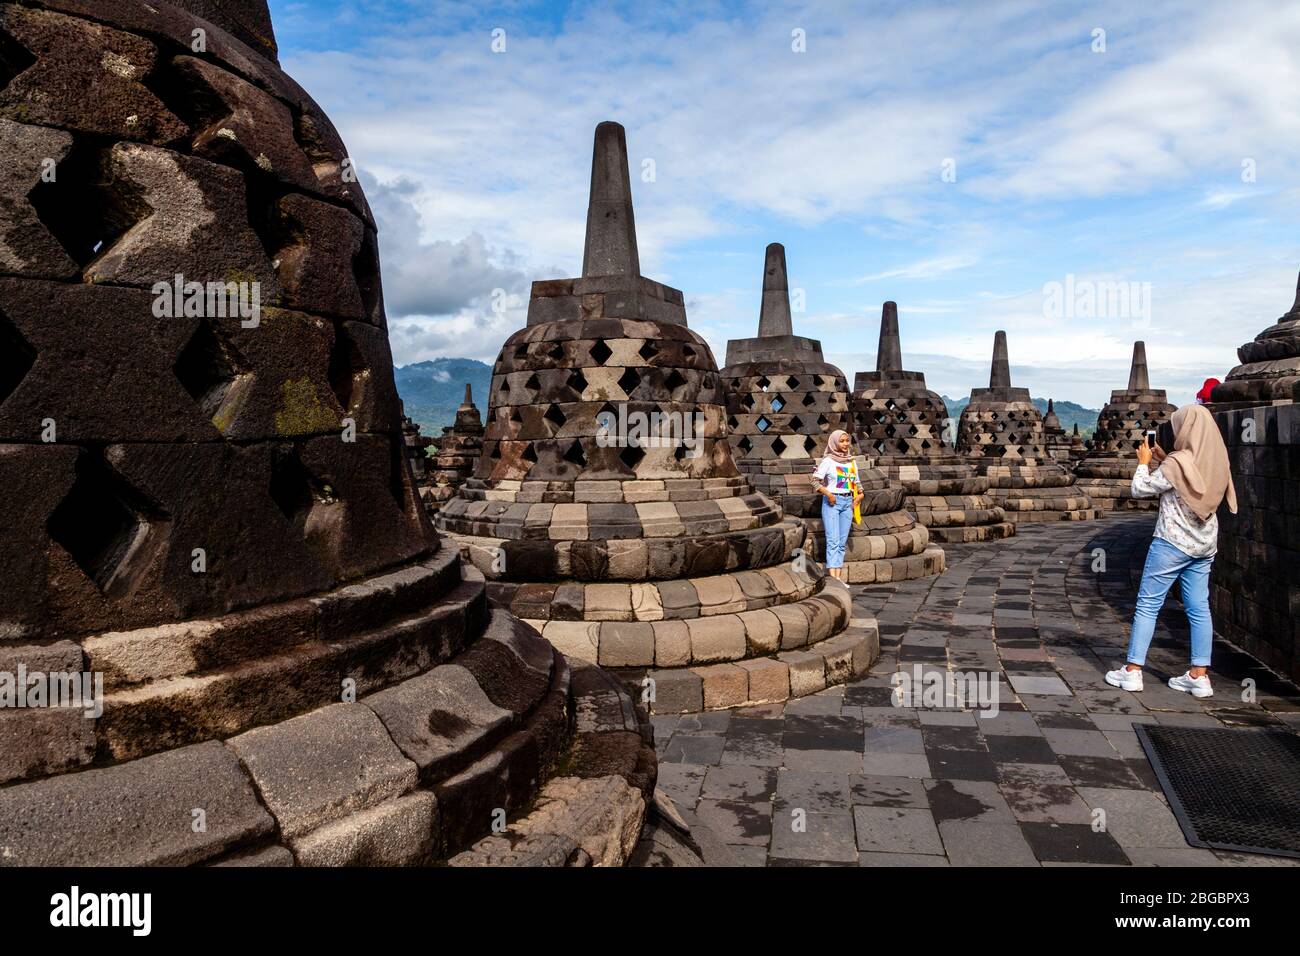 Visiteurs intérieurs indonésiens au temple de Borobudur, Yogyakarta, Java centrale, Indonésie Banque D'Images